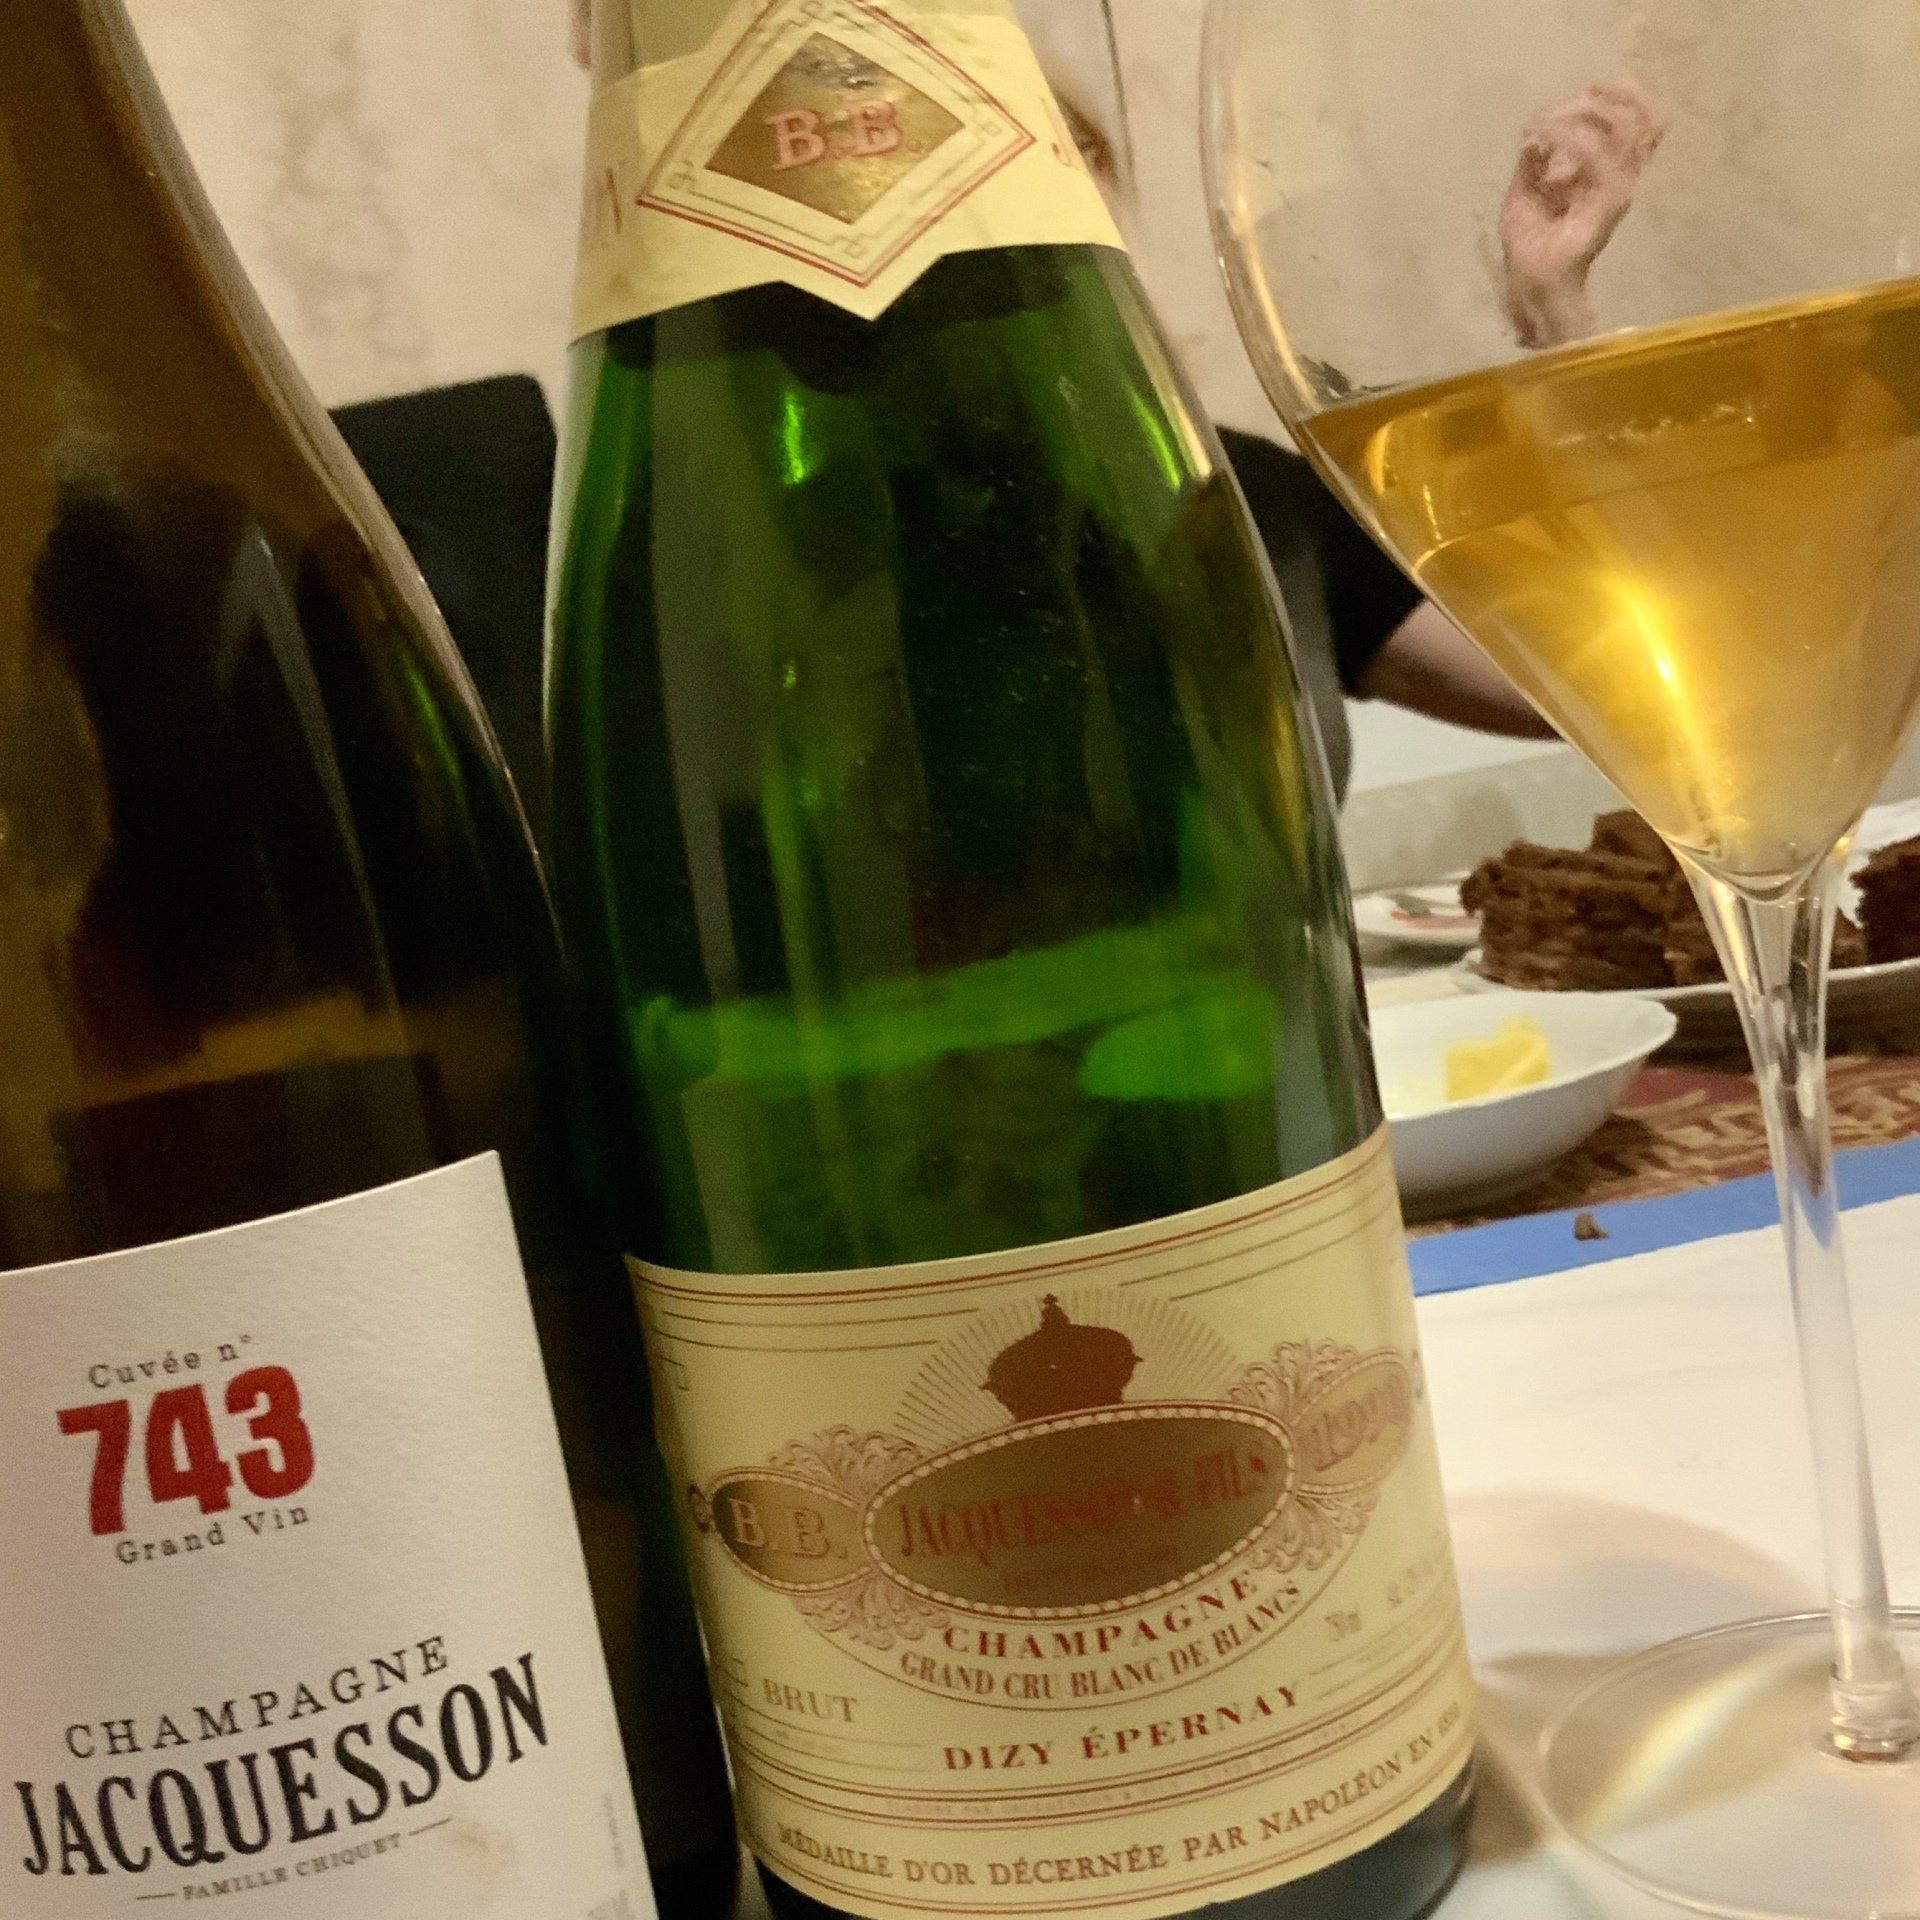 Champagne Jacquesson Cuvée N° 743  plus Blanc de Blancs Avize 1990